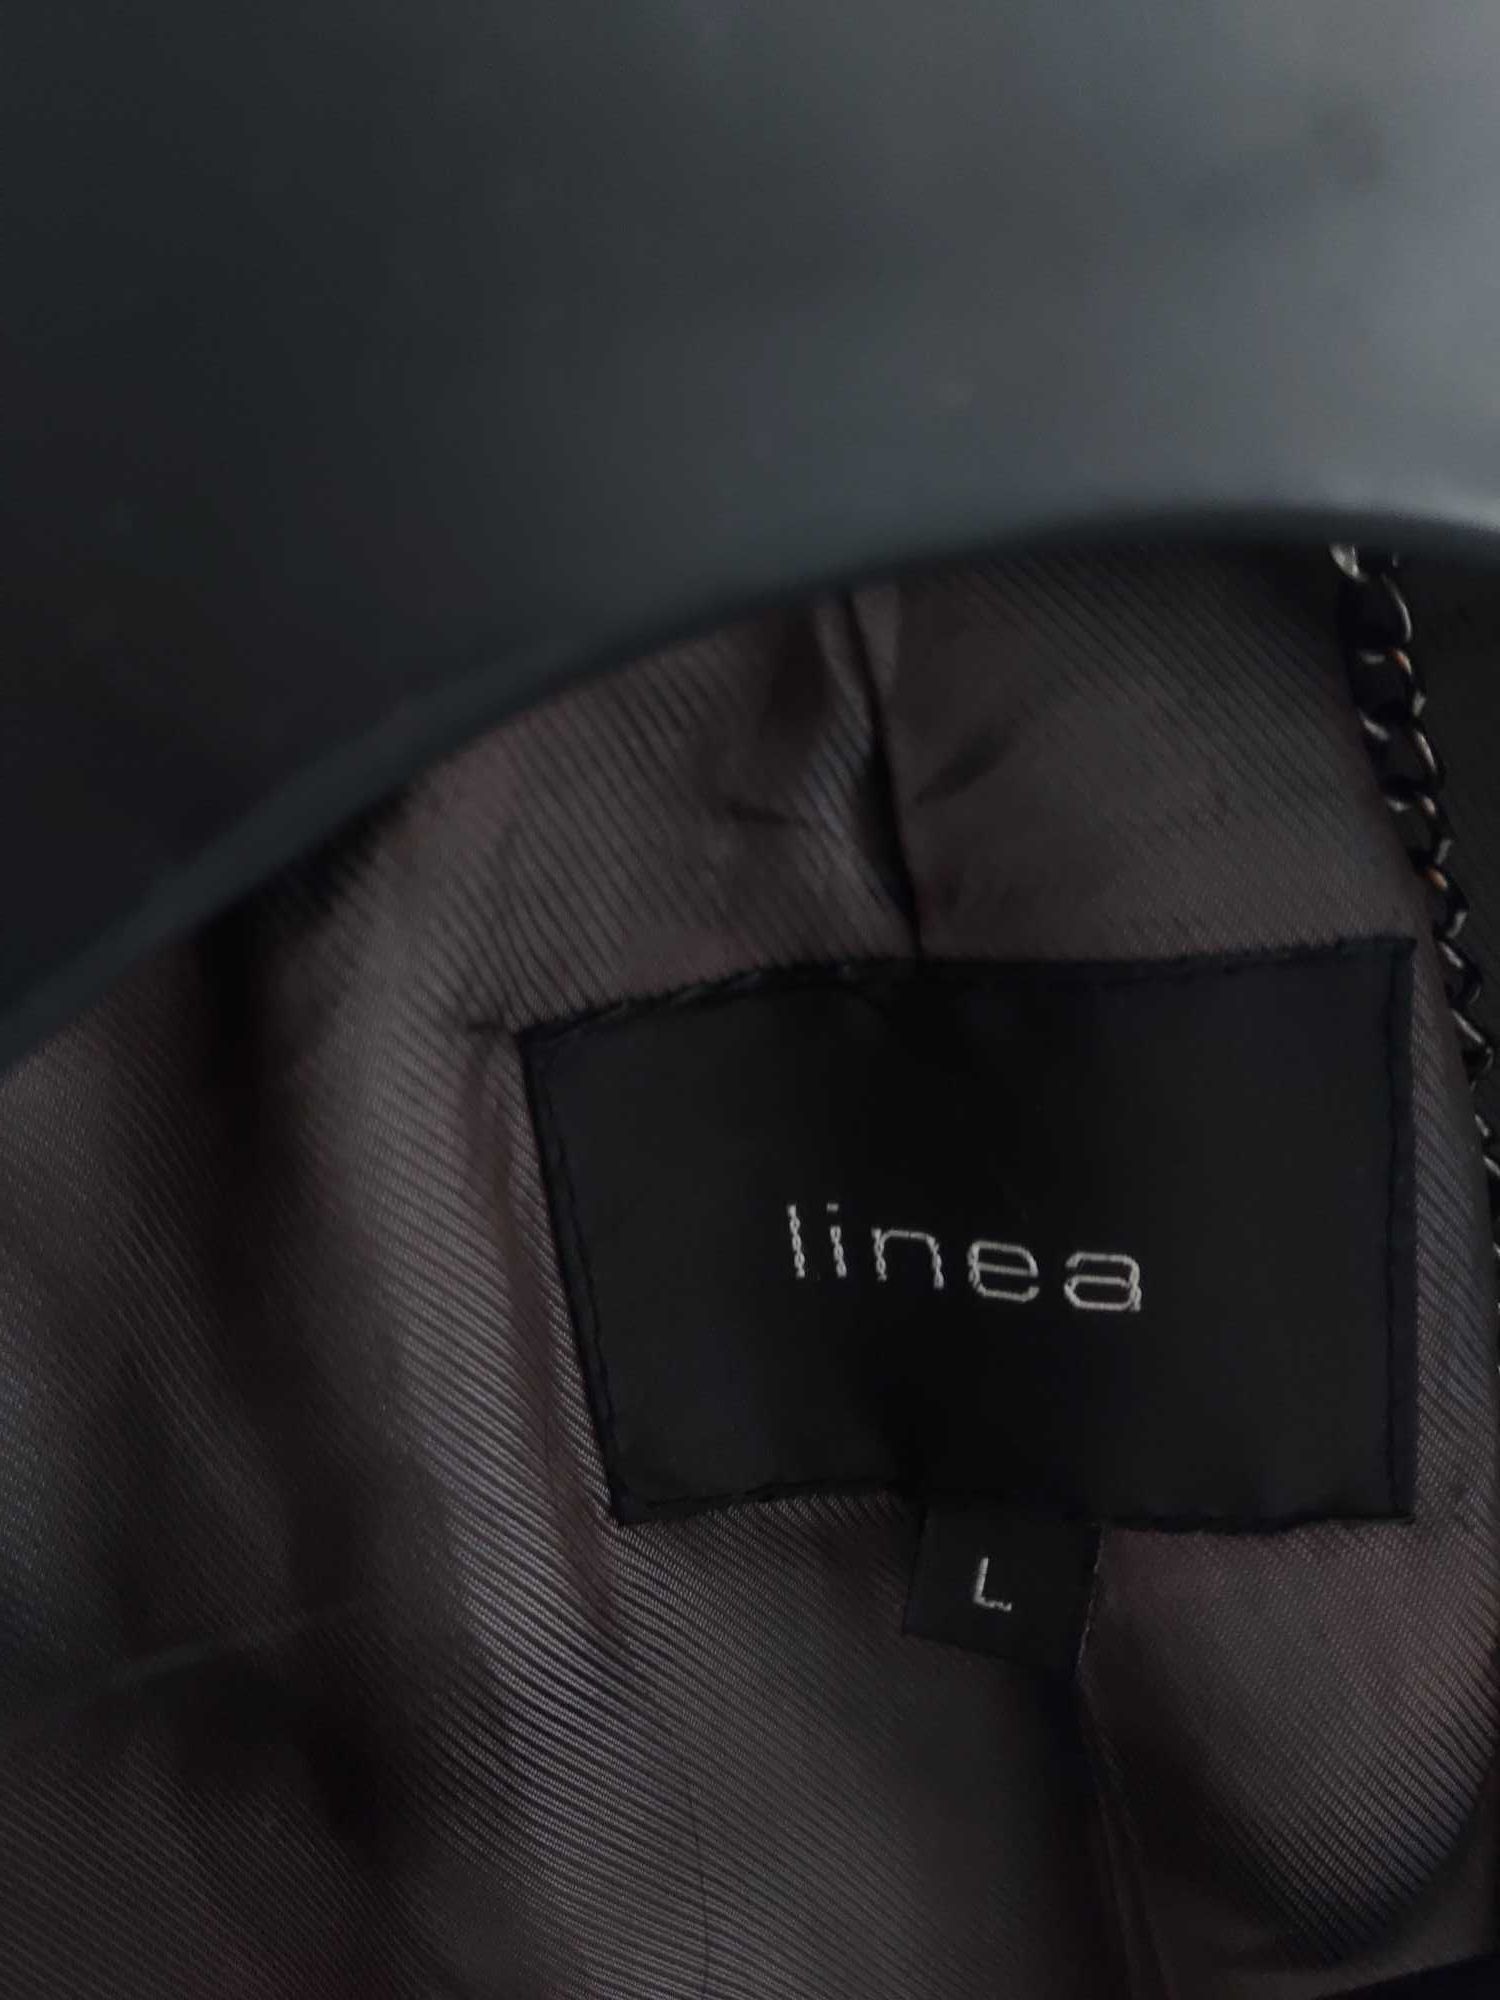 Płaszcz brązowy elegancki ciepły klasyczny Linea rozmiar L 40 jak nowy